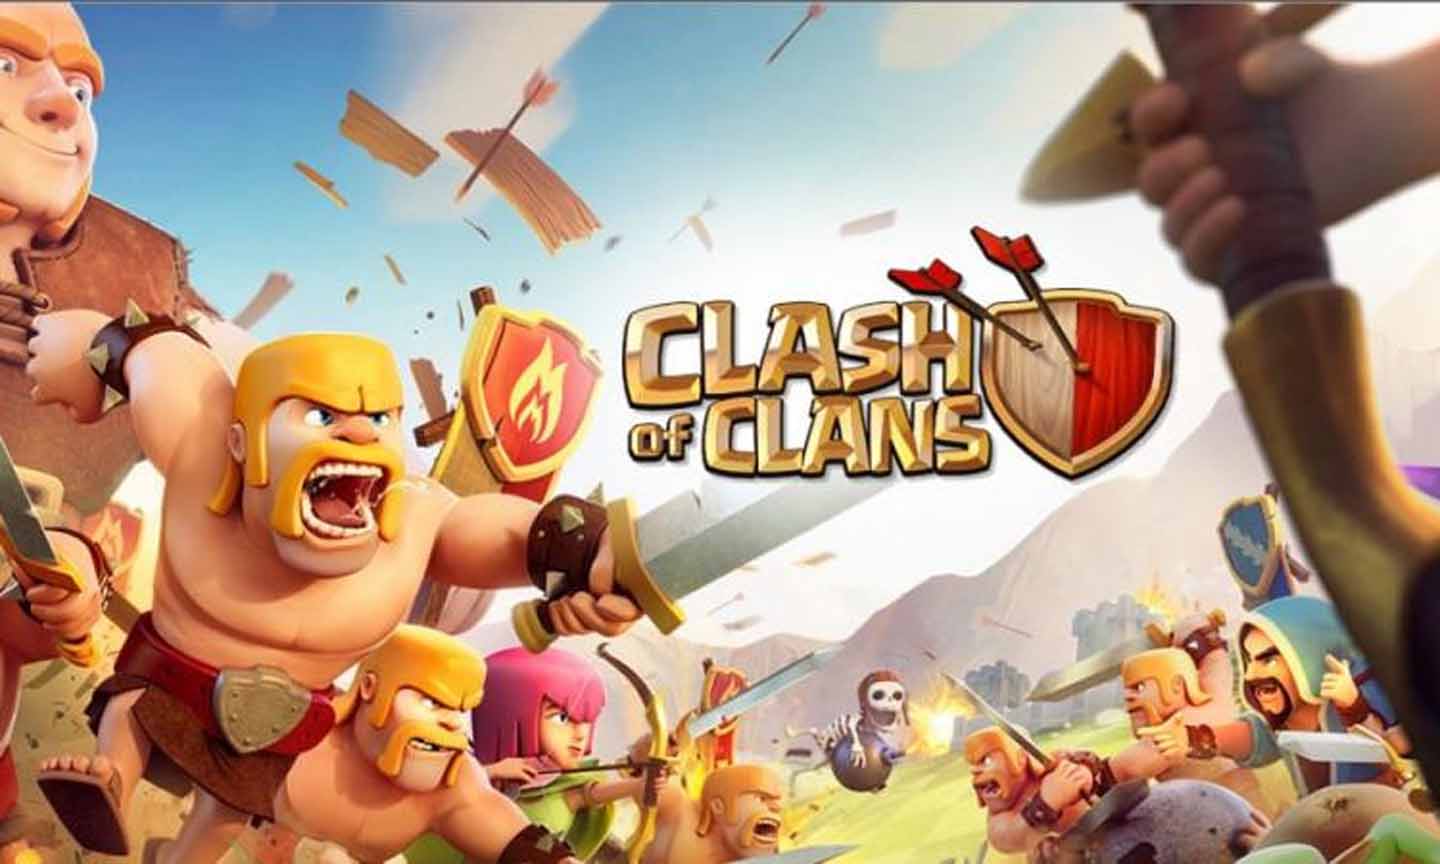 Vào đầu tháng 7, nhiều game của nhà phát hành Supercell như Clash of Clans, Clash Royale đã bị xóa khỏi kho ứng dụng tại Việt Nam. Ảnh: Supercell.